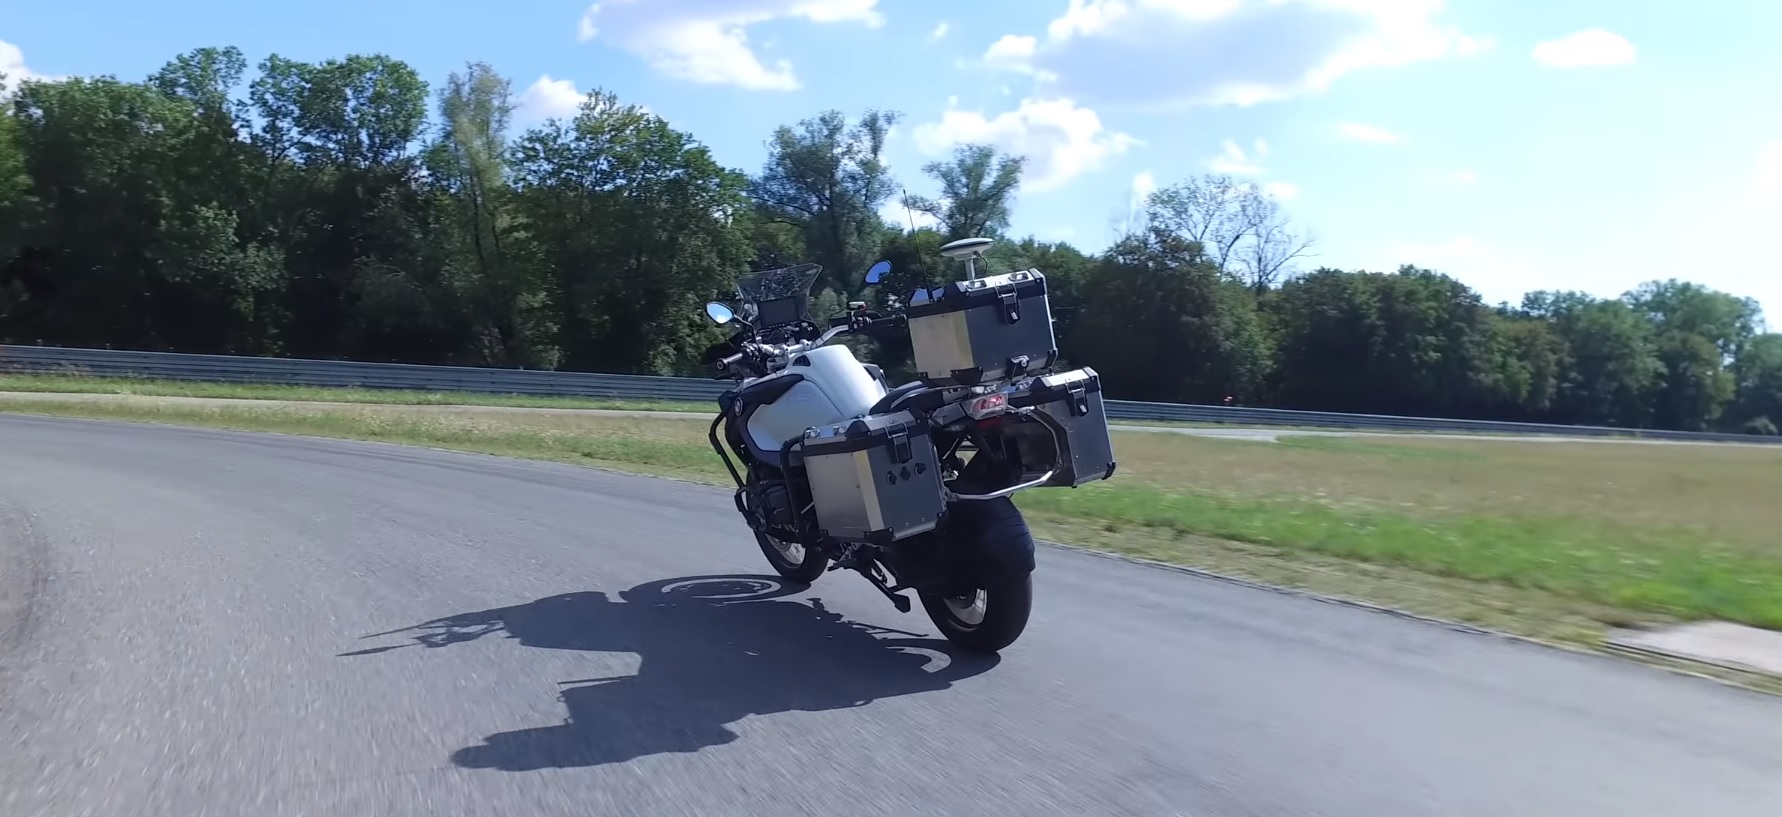 BMW har laget en ubemannet motorsykkel for å teste ut nye sikkerhetssystemer